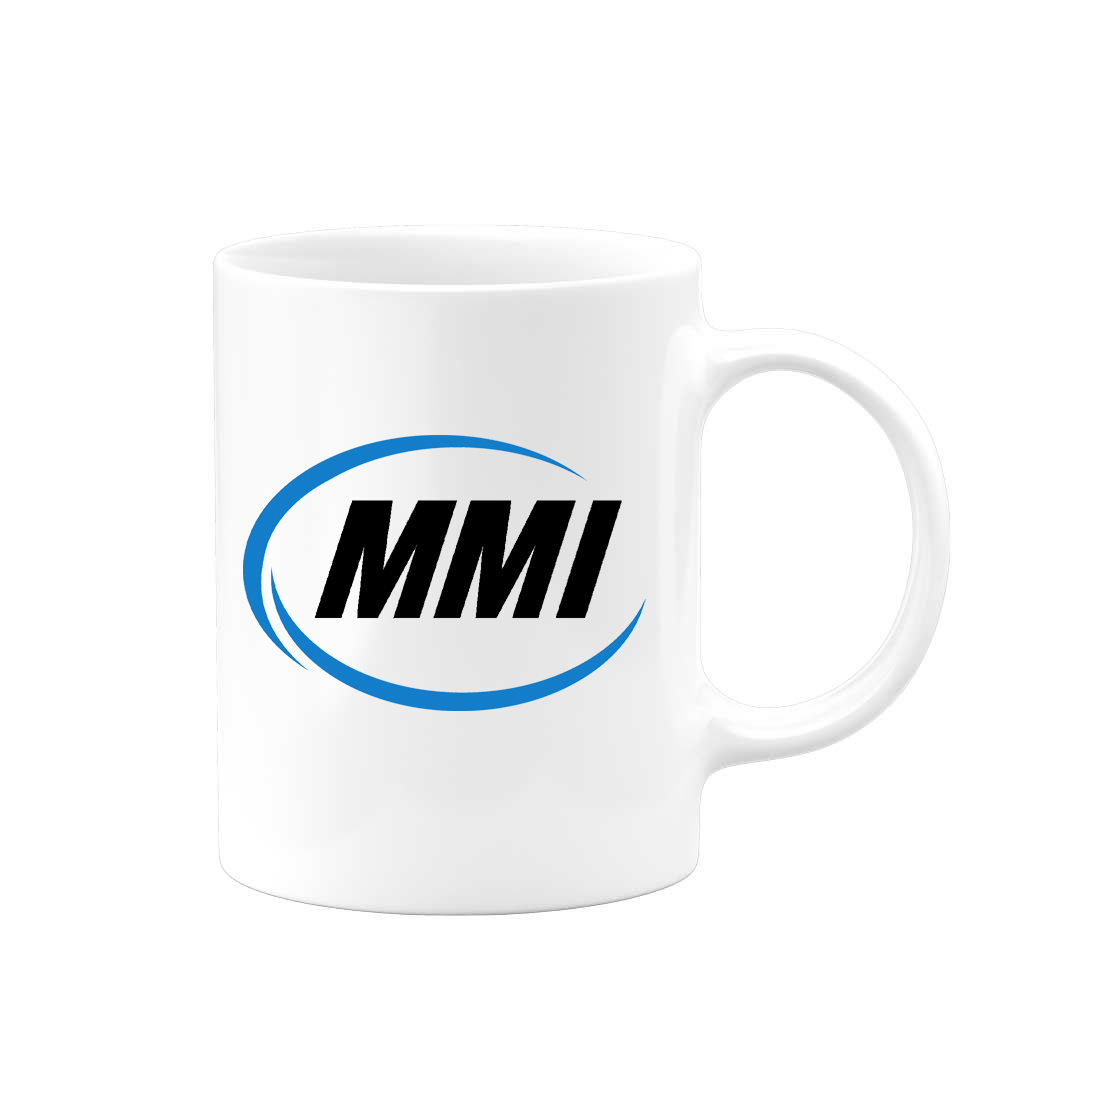 MMI (Marine) Coffee Mug